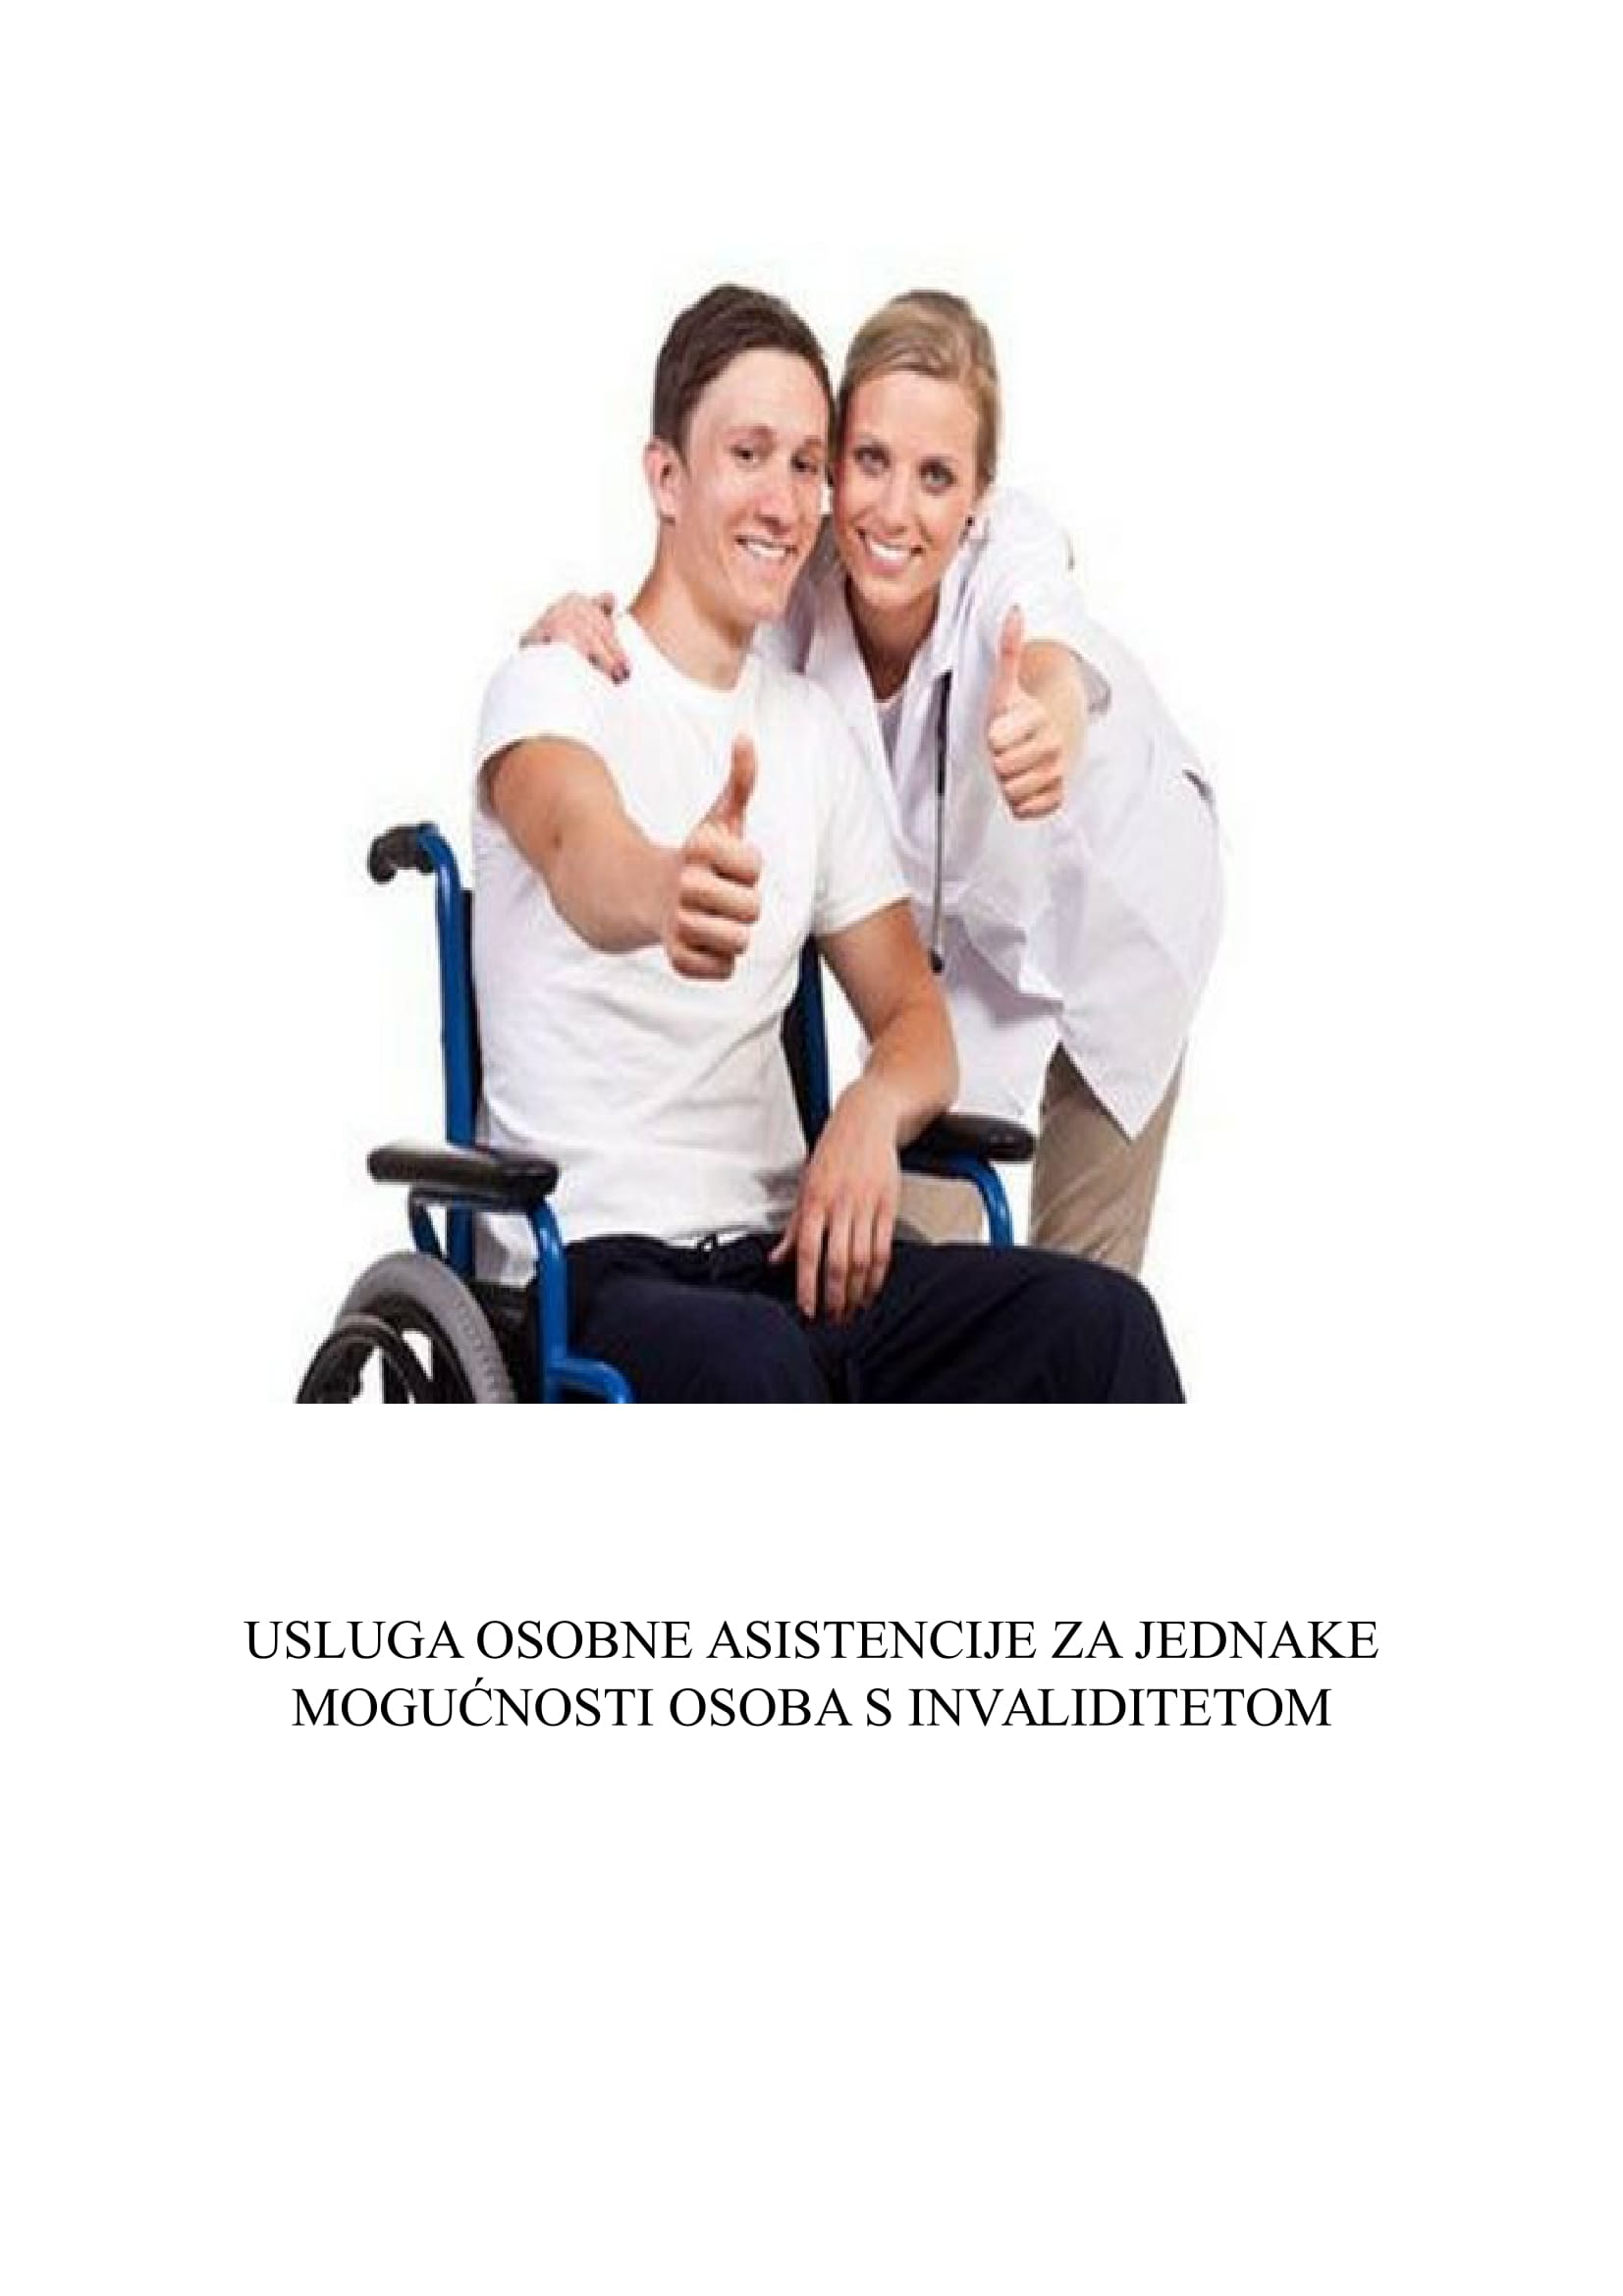 Usluga osobne asistencije za jednake mogućnosti osoba s invaliditetom